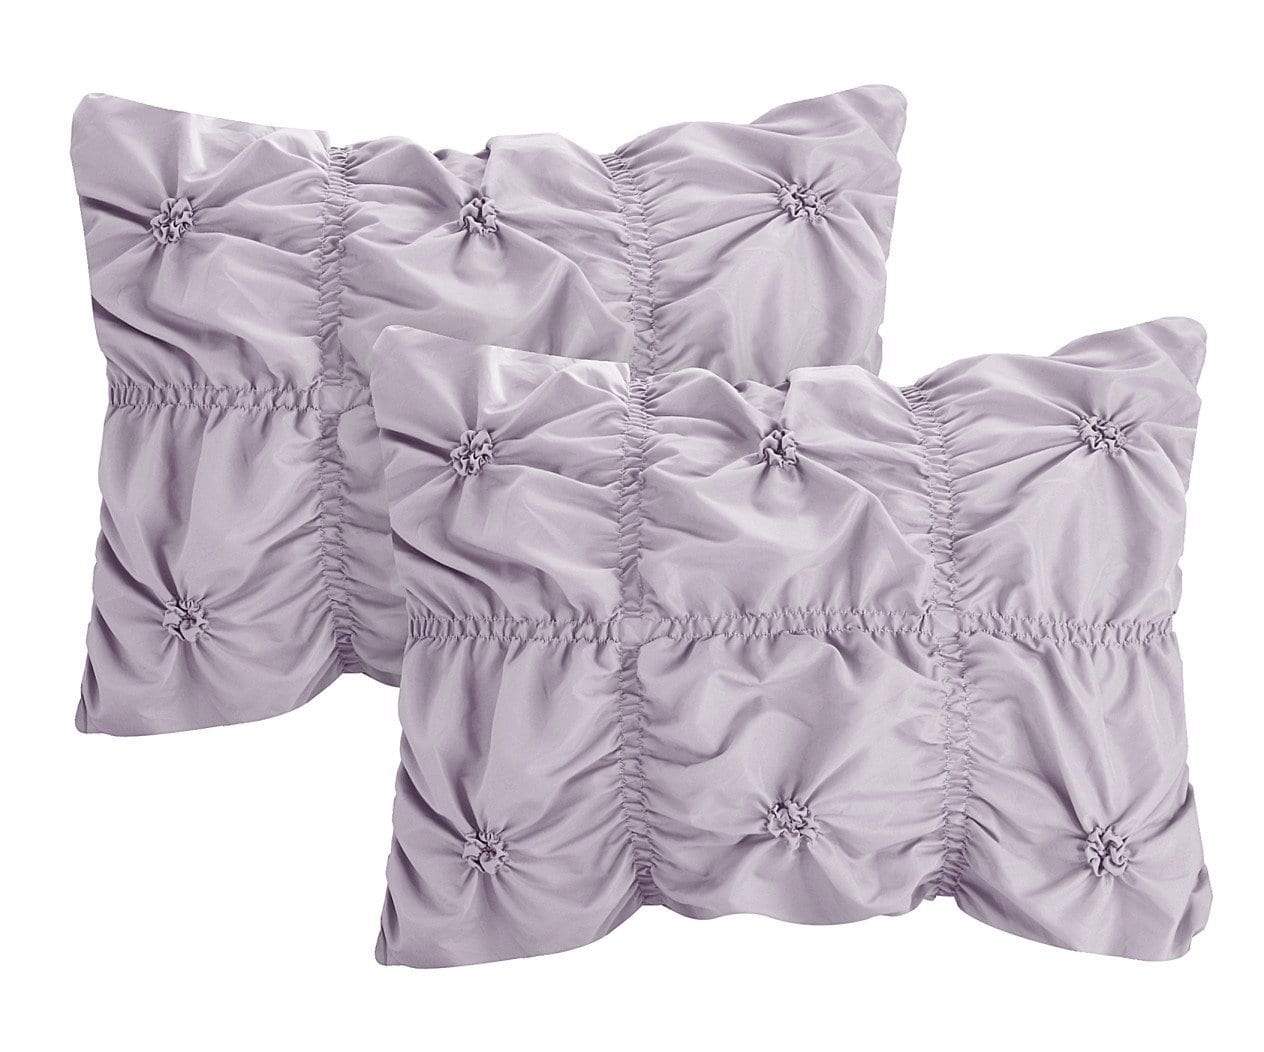 Halpert 10 Piece Floral Comforter Set